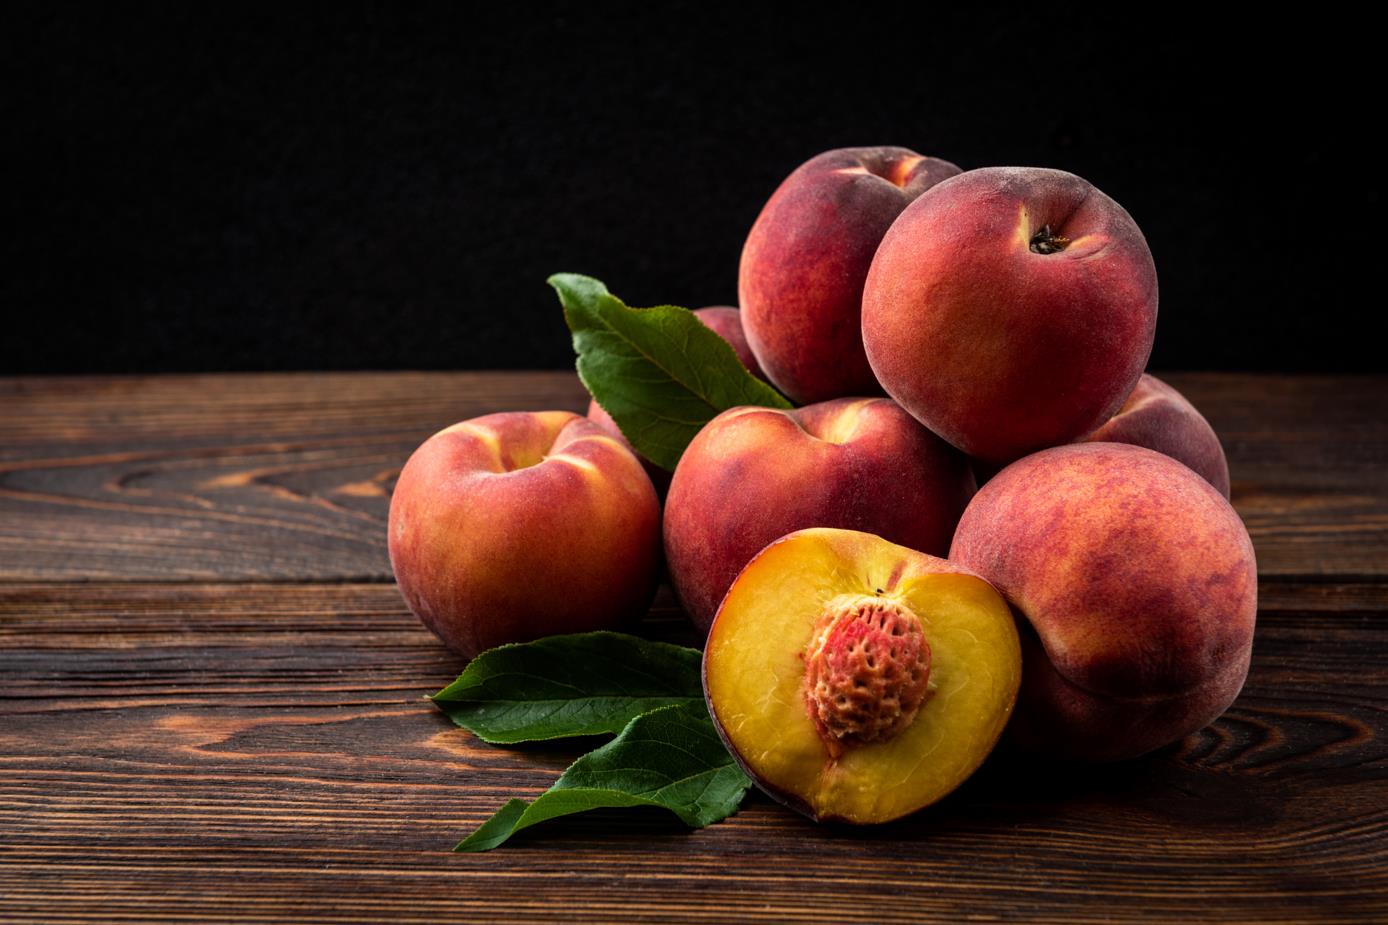 How to Cut a Peach?